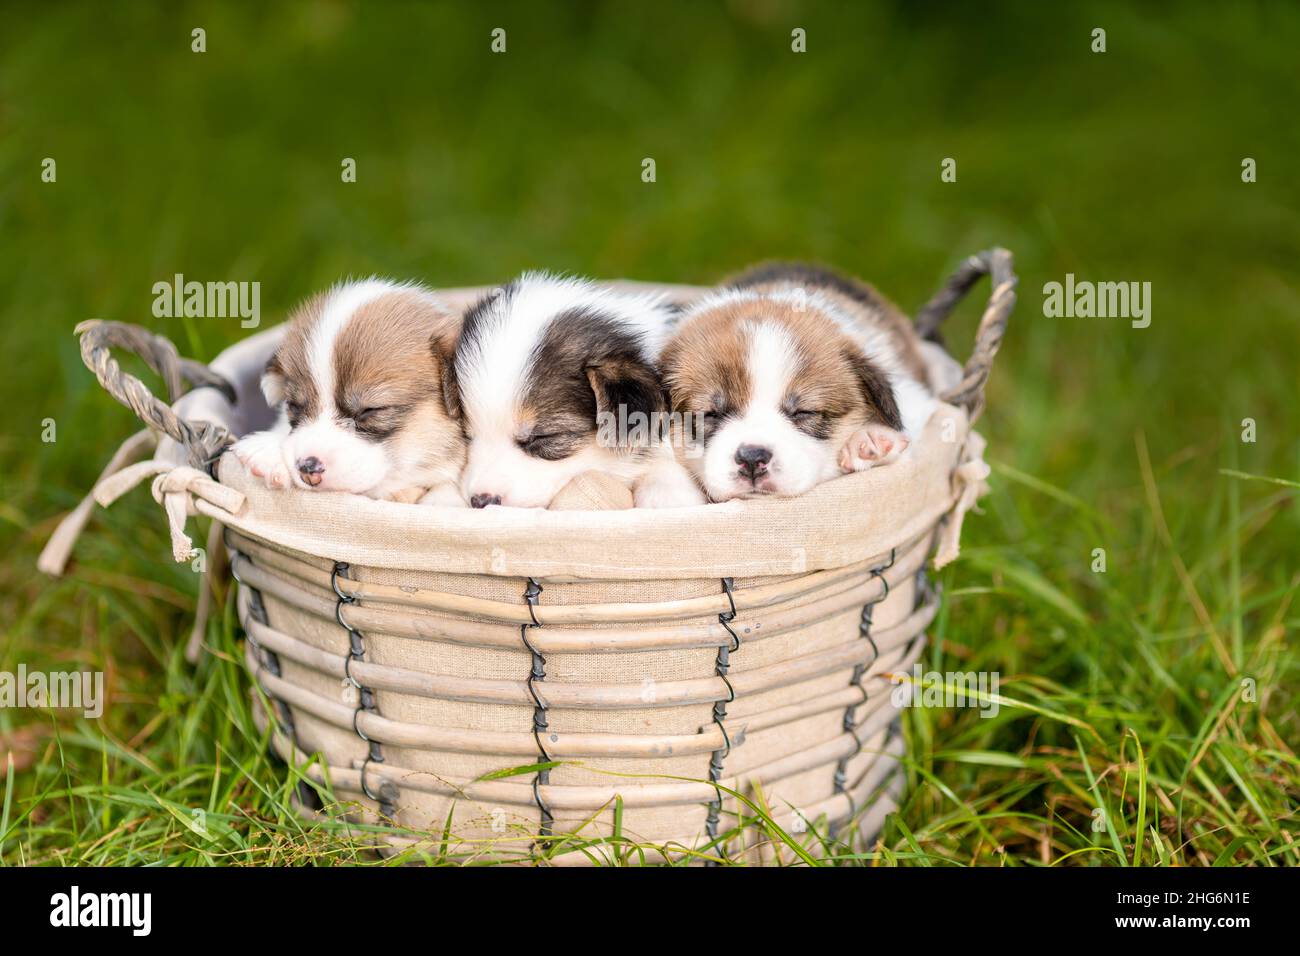 Trois petits chiots dormants de corgi gallois pembroke race chien dans le panier dans la nature Banque D'Images